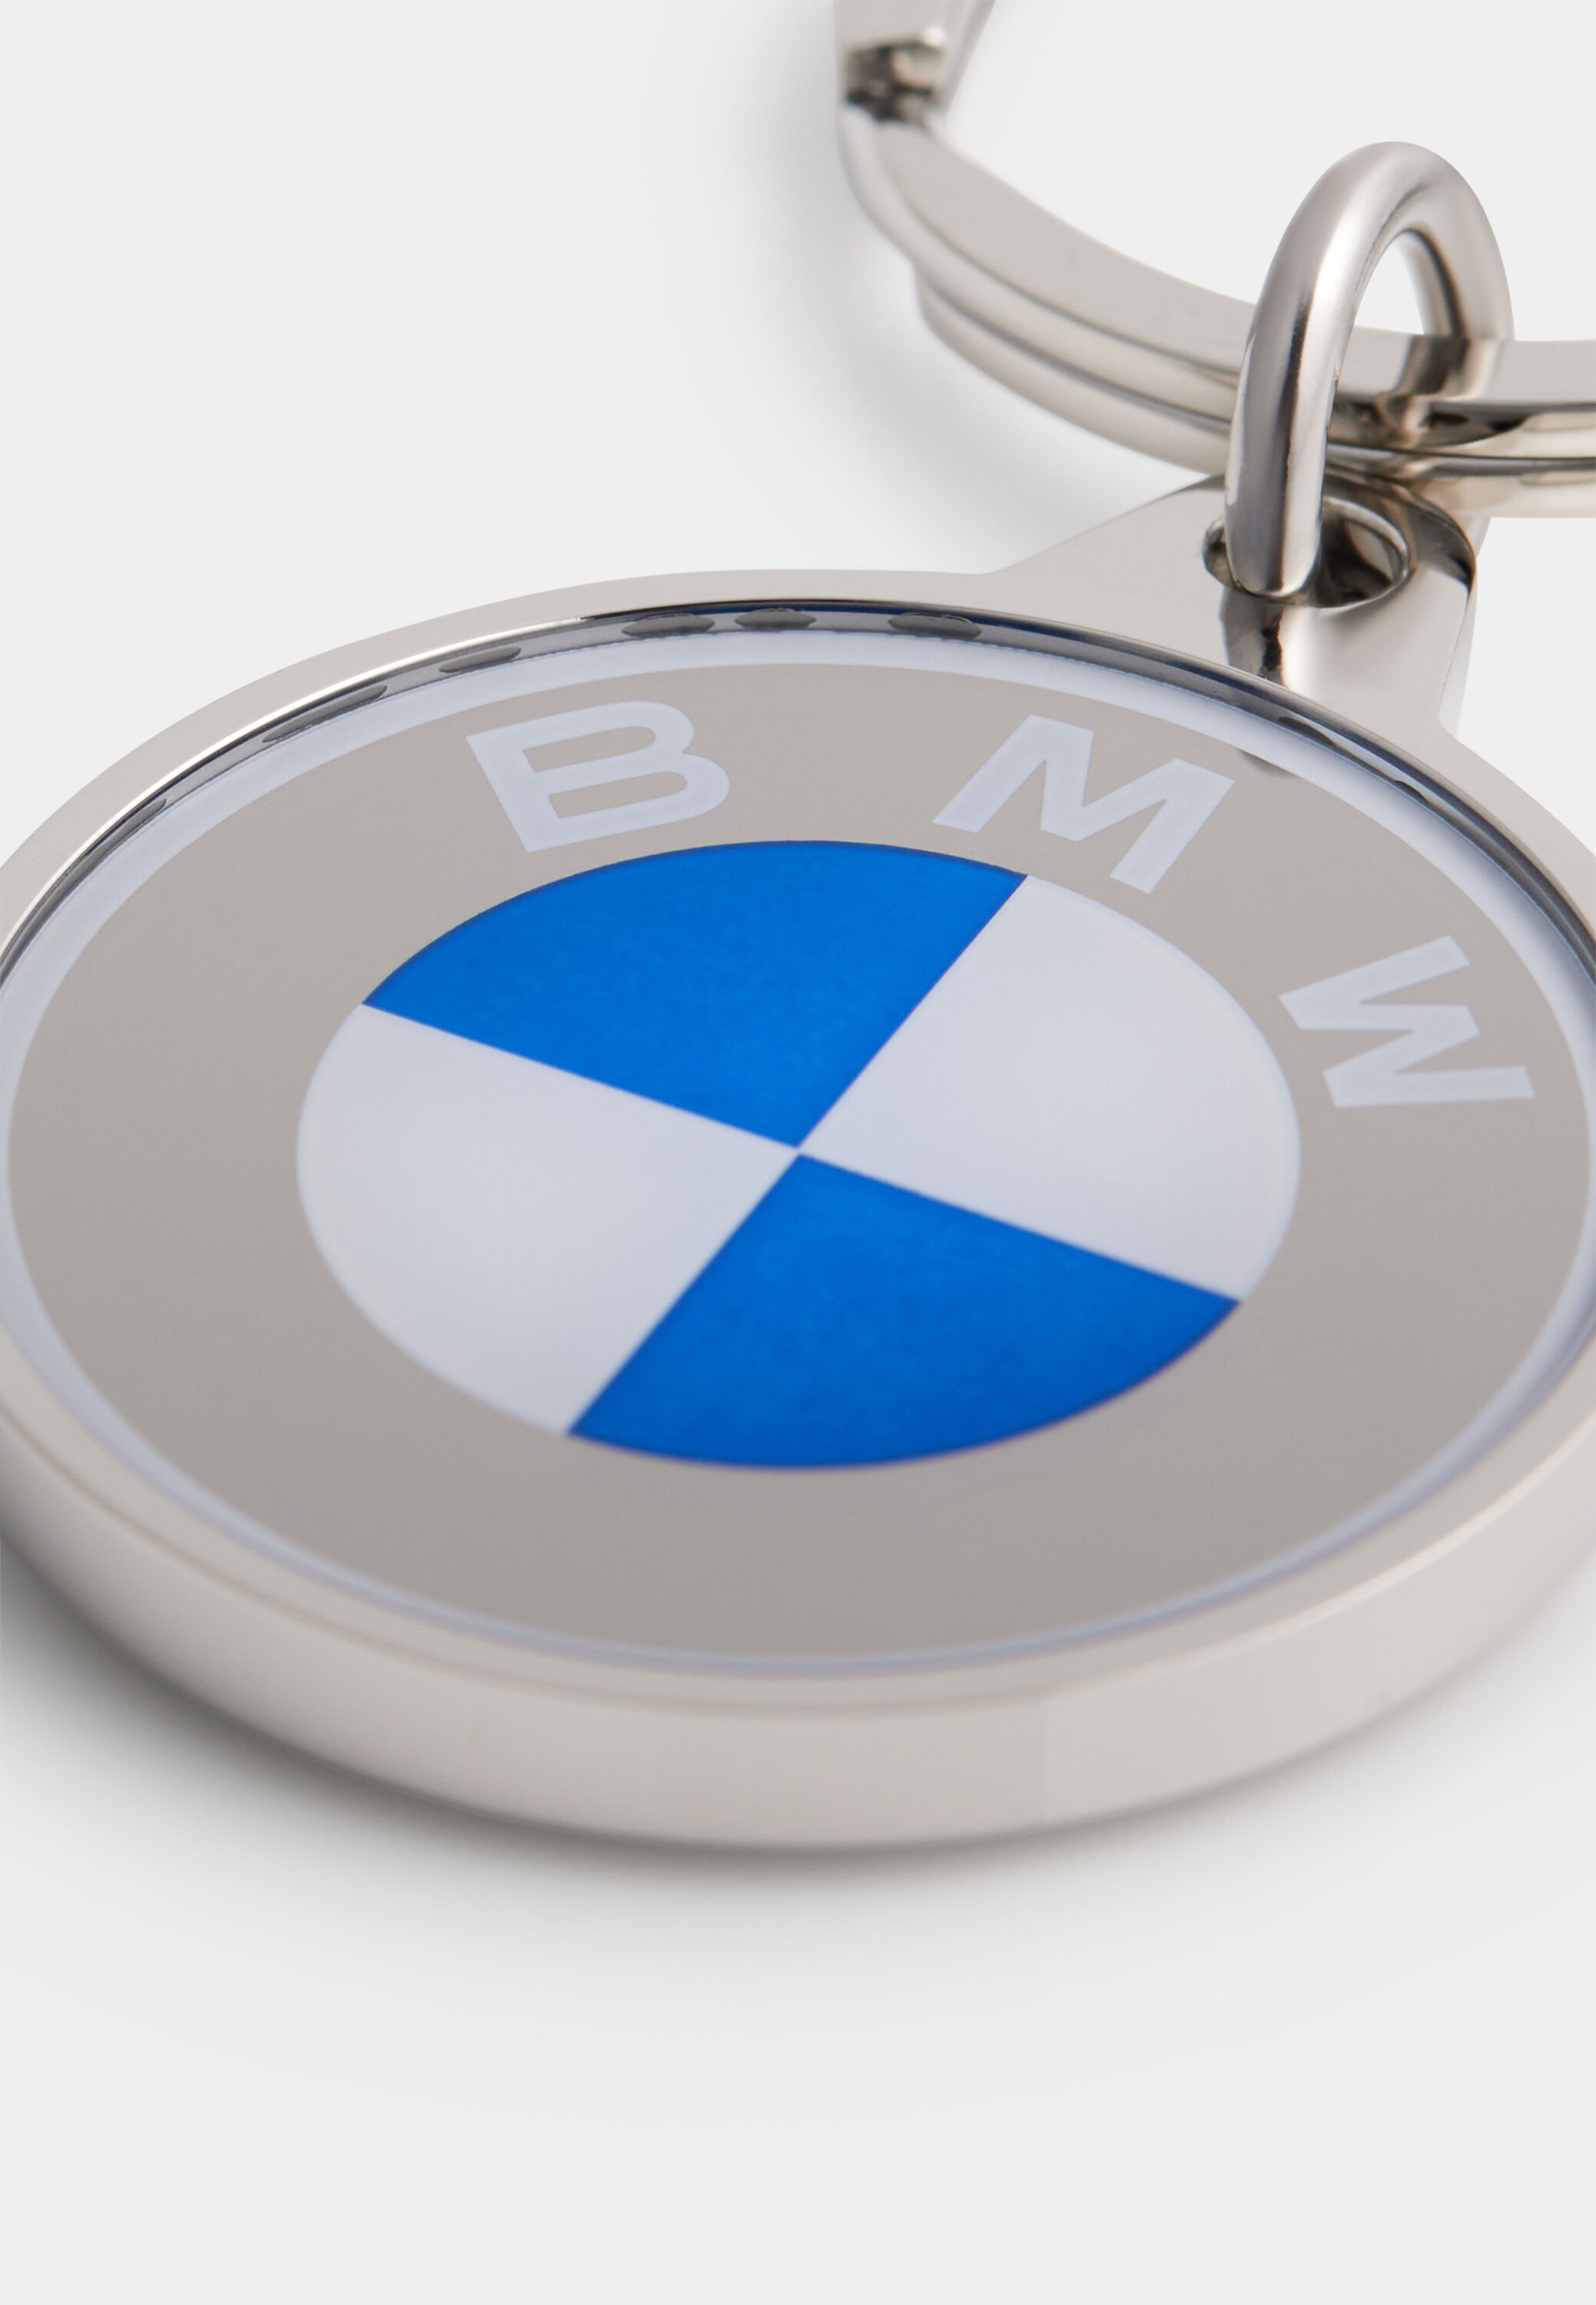 Llavero BMW con el logotipo